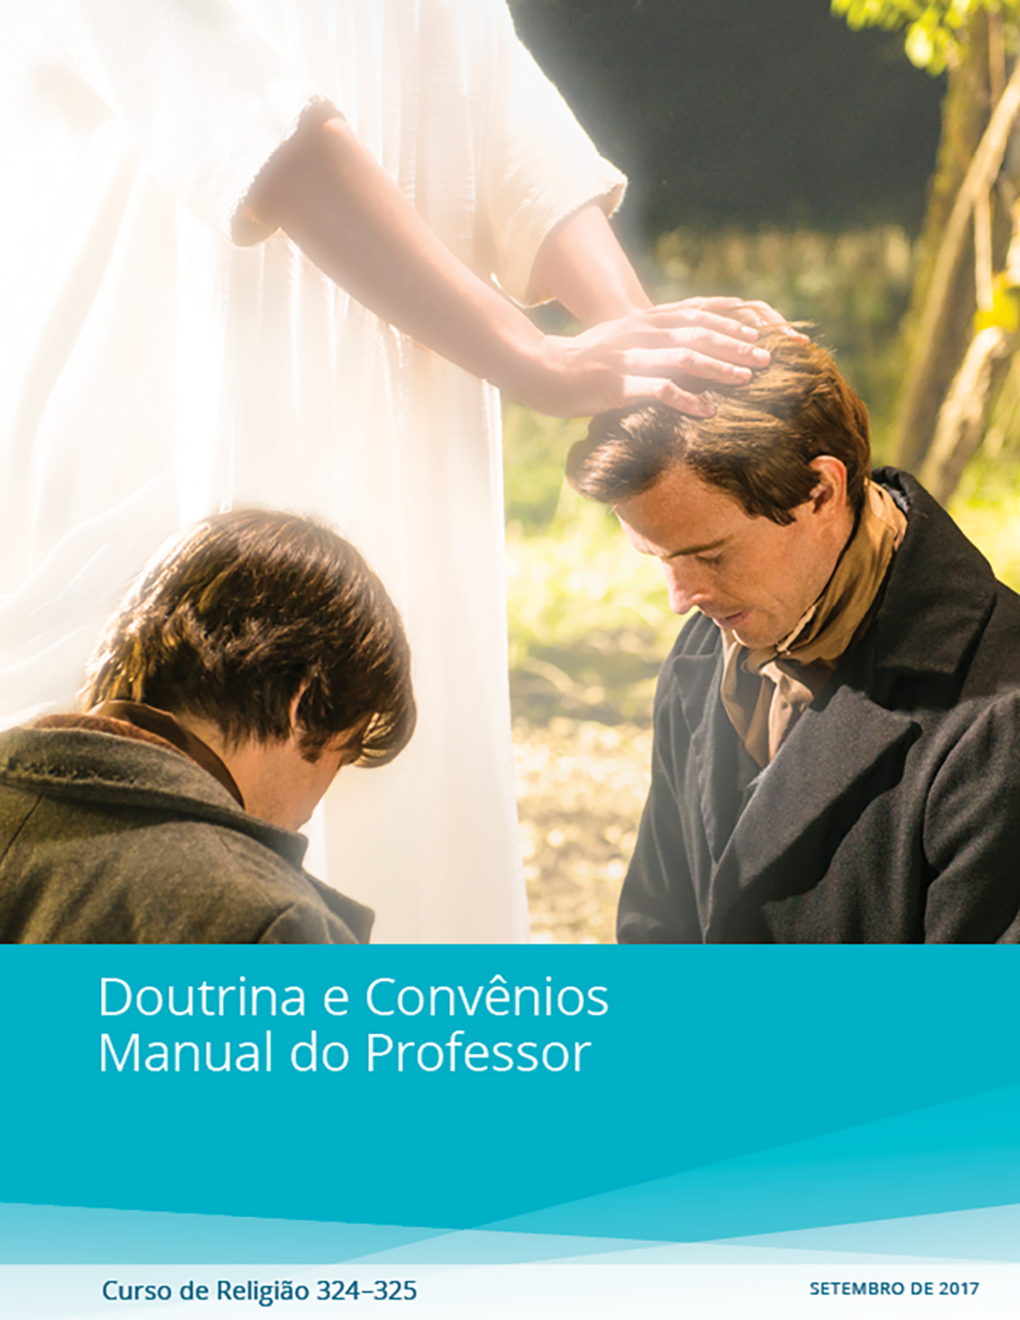 Doutrina e Convênios — Manual do Professor